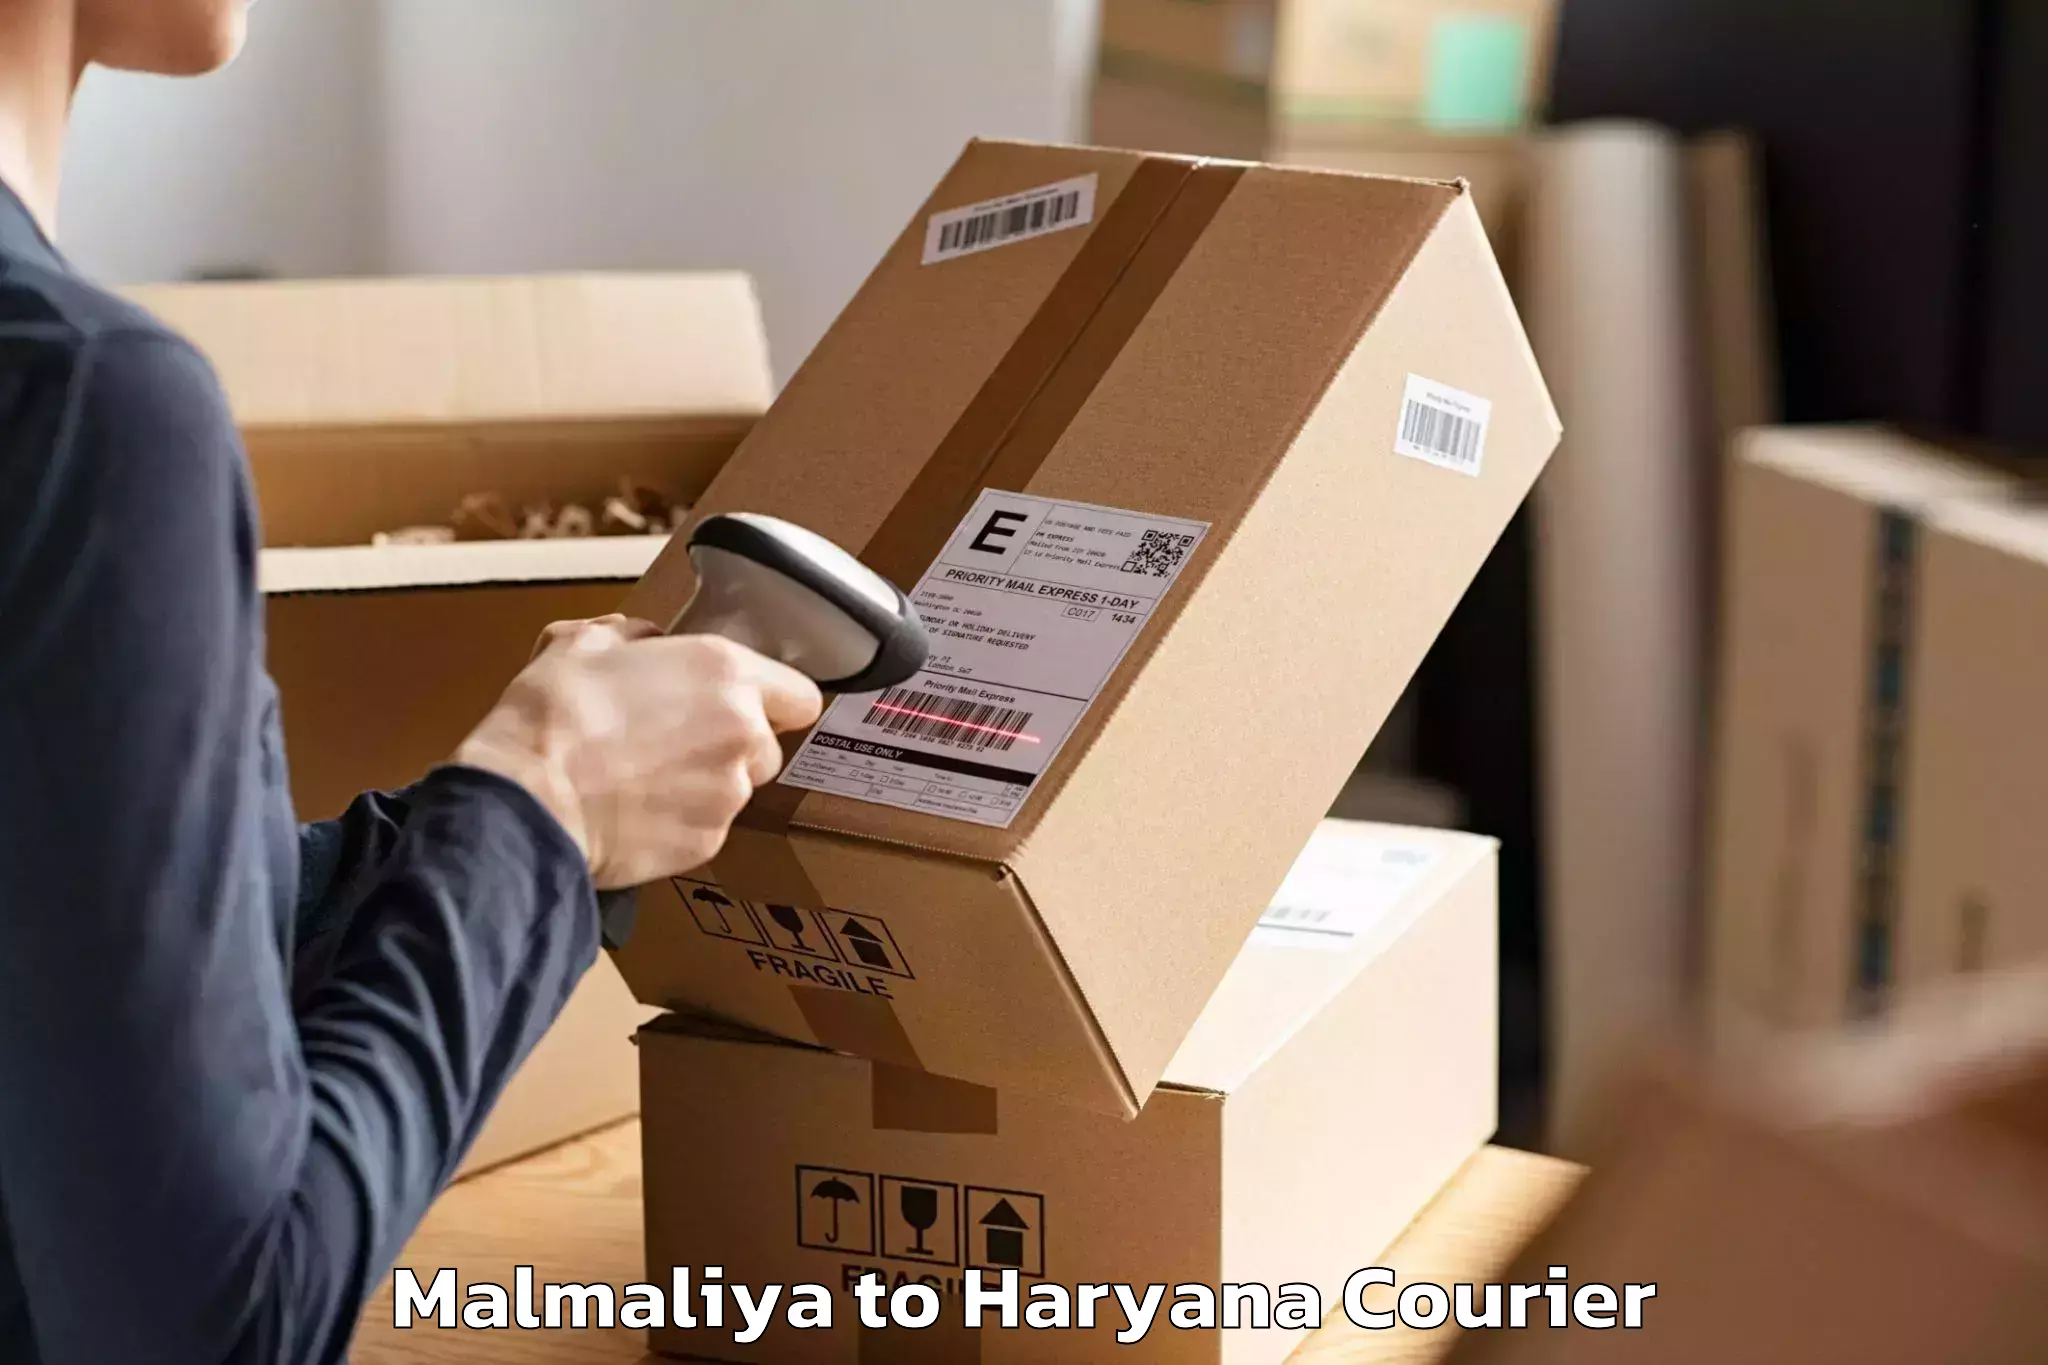 Moving and packing experts Malmaliya to Narwana